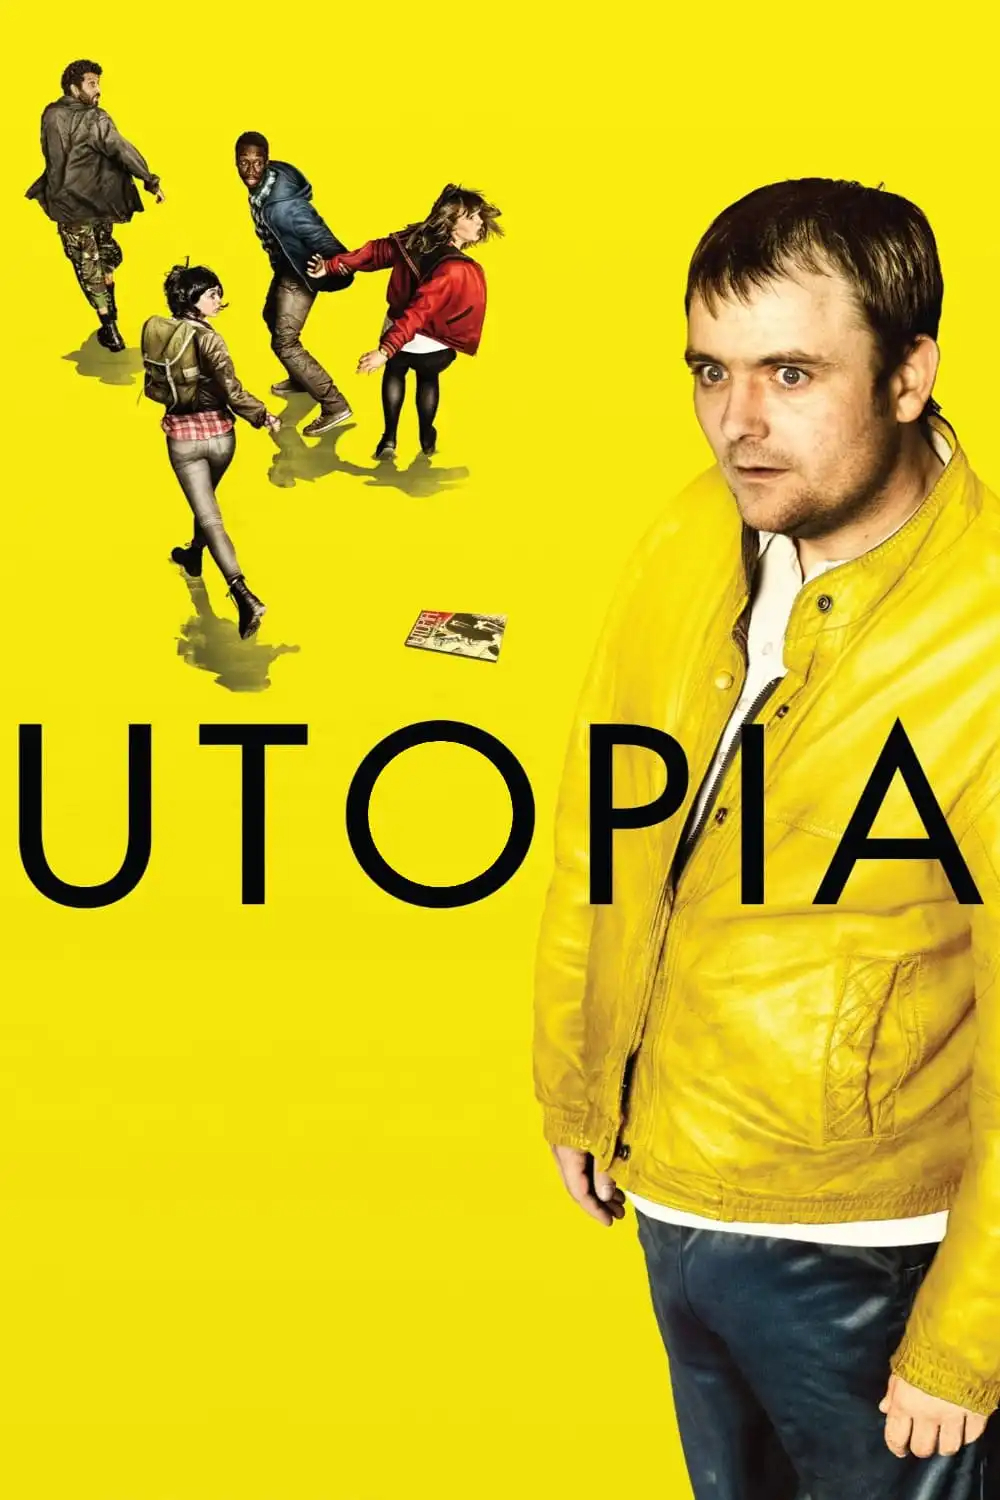 Utopia (Integrale) FRENCH 720p HDTV